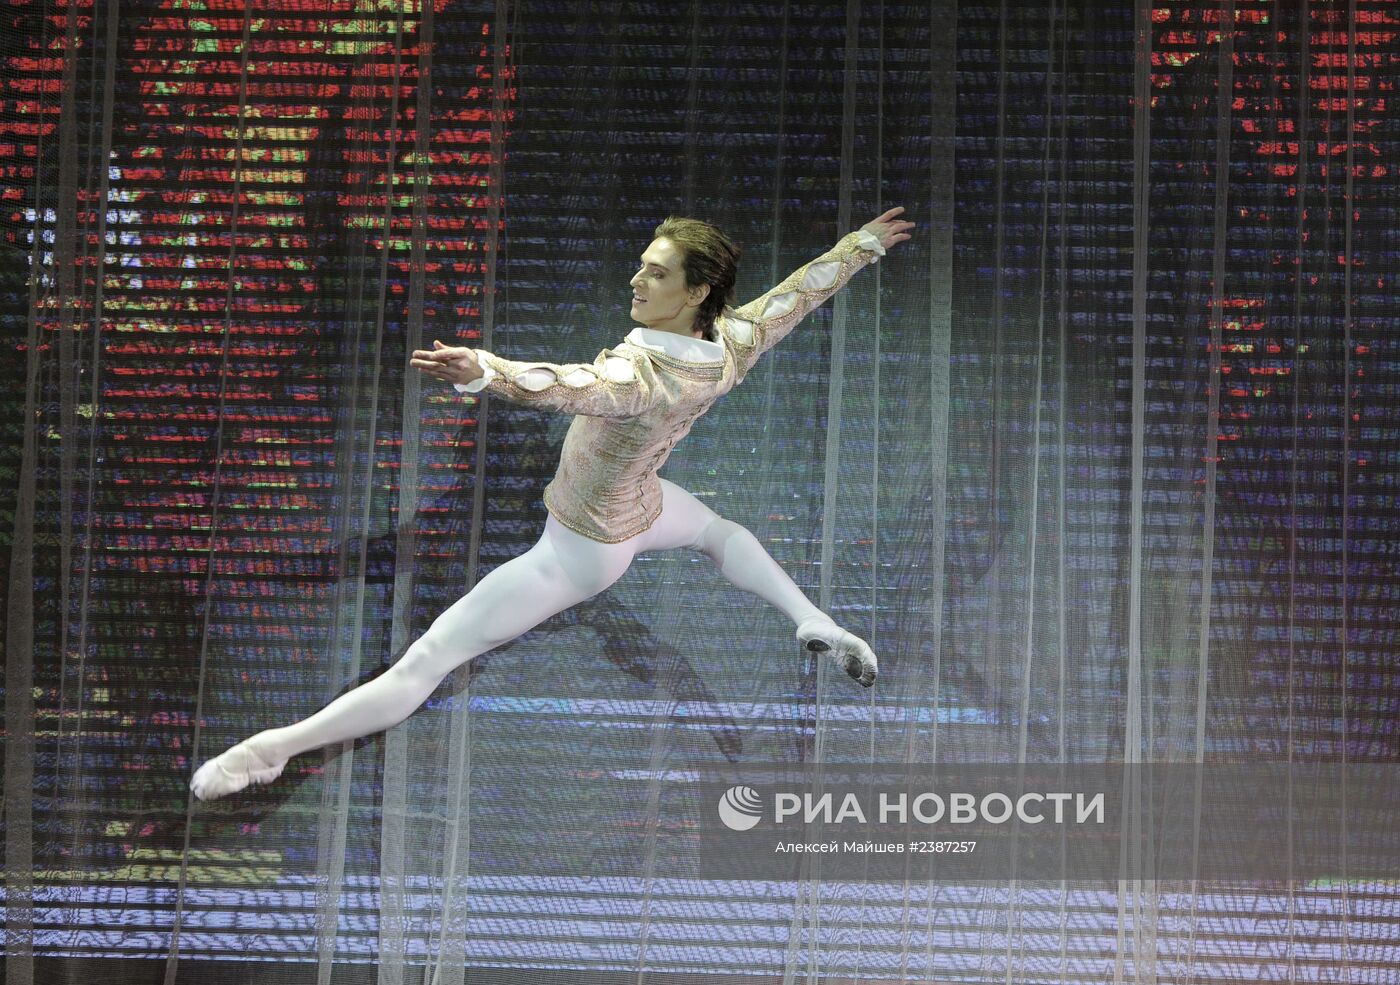 Гала-вечер "Звезды мирового балета" в Красной поляне